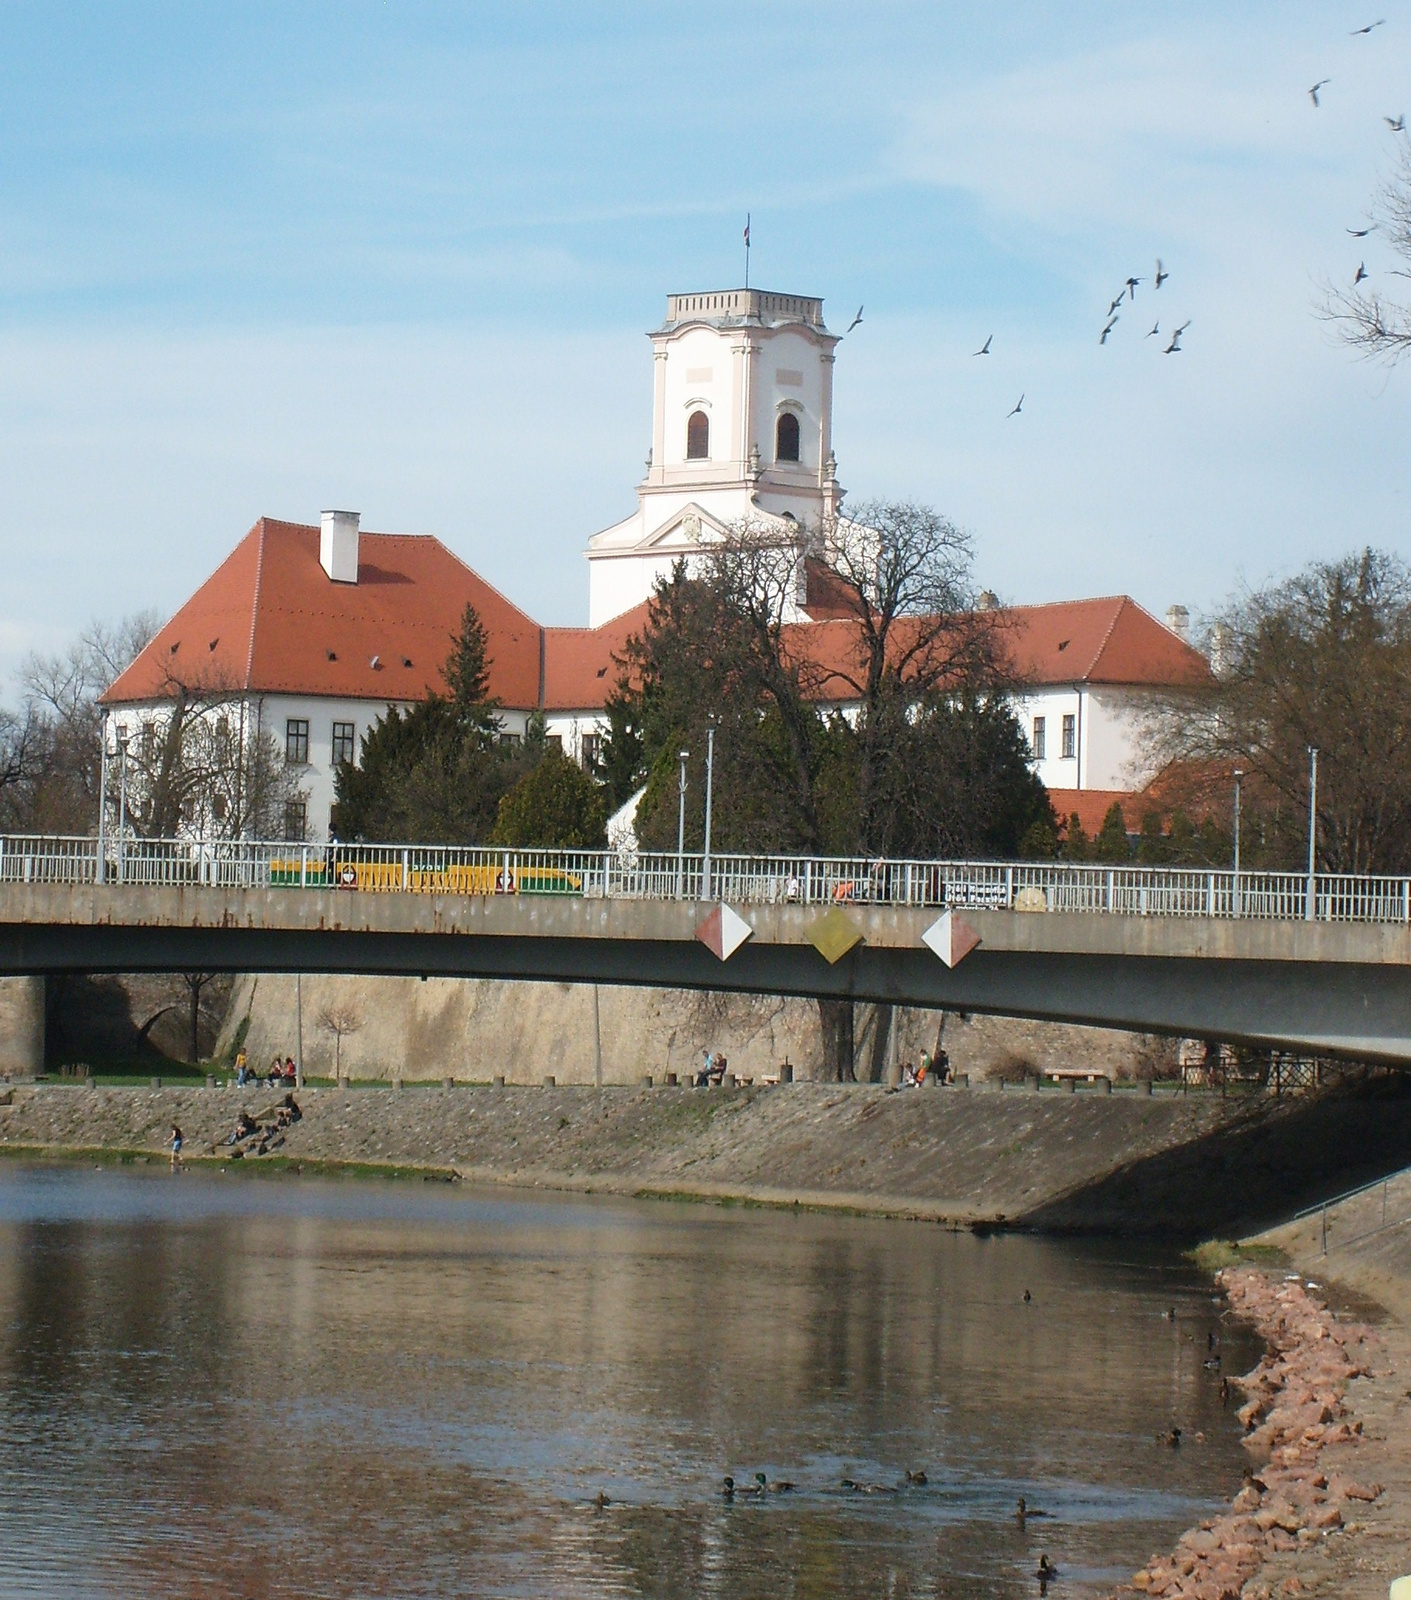 Győri vár